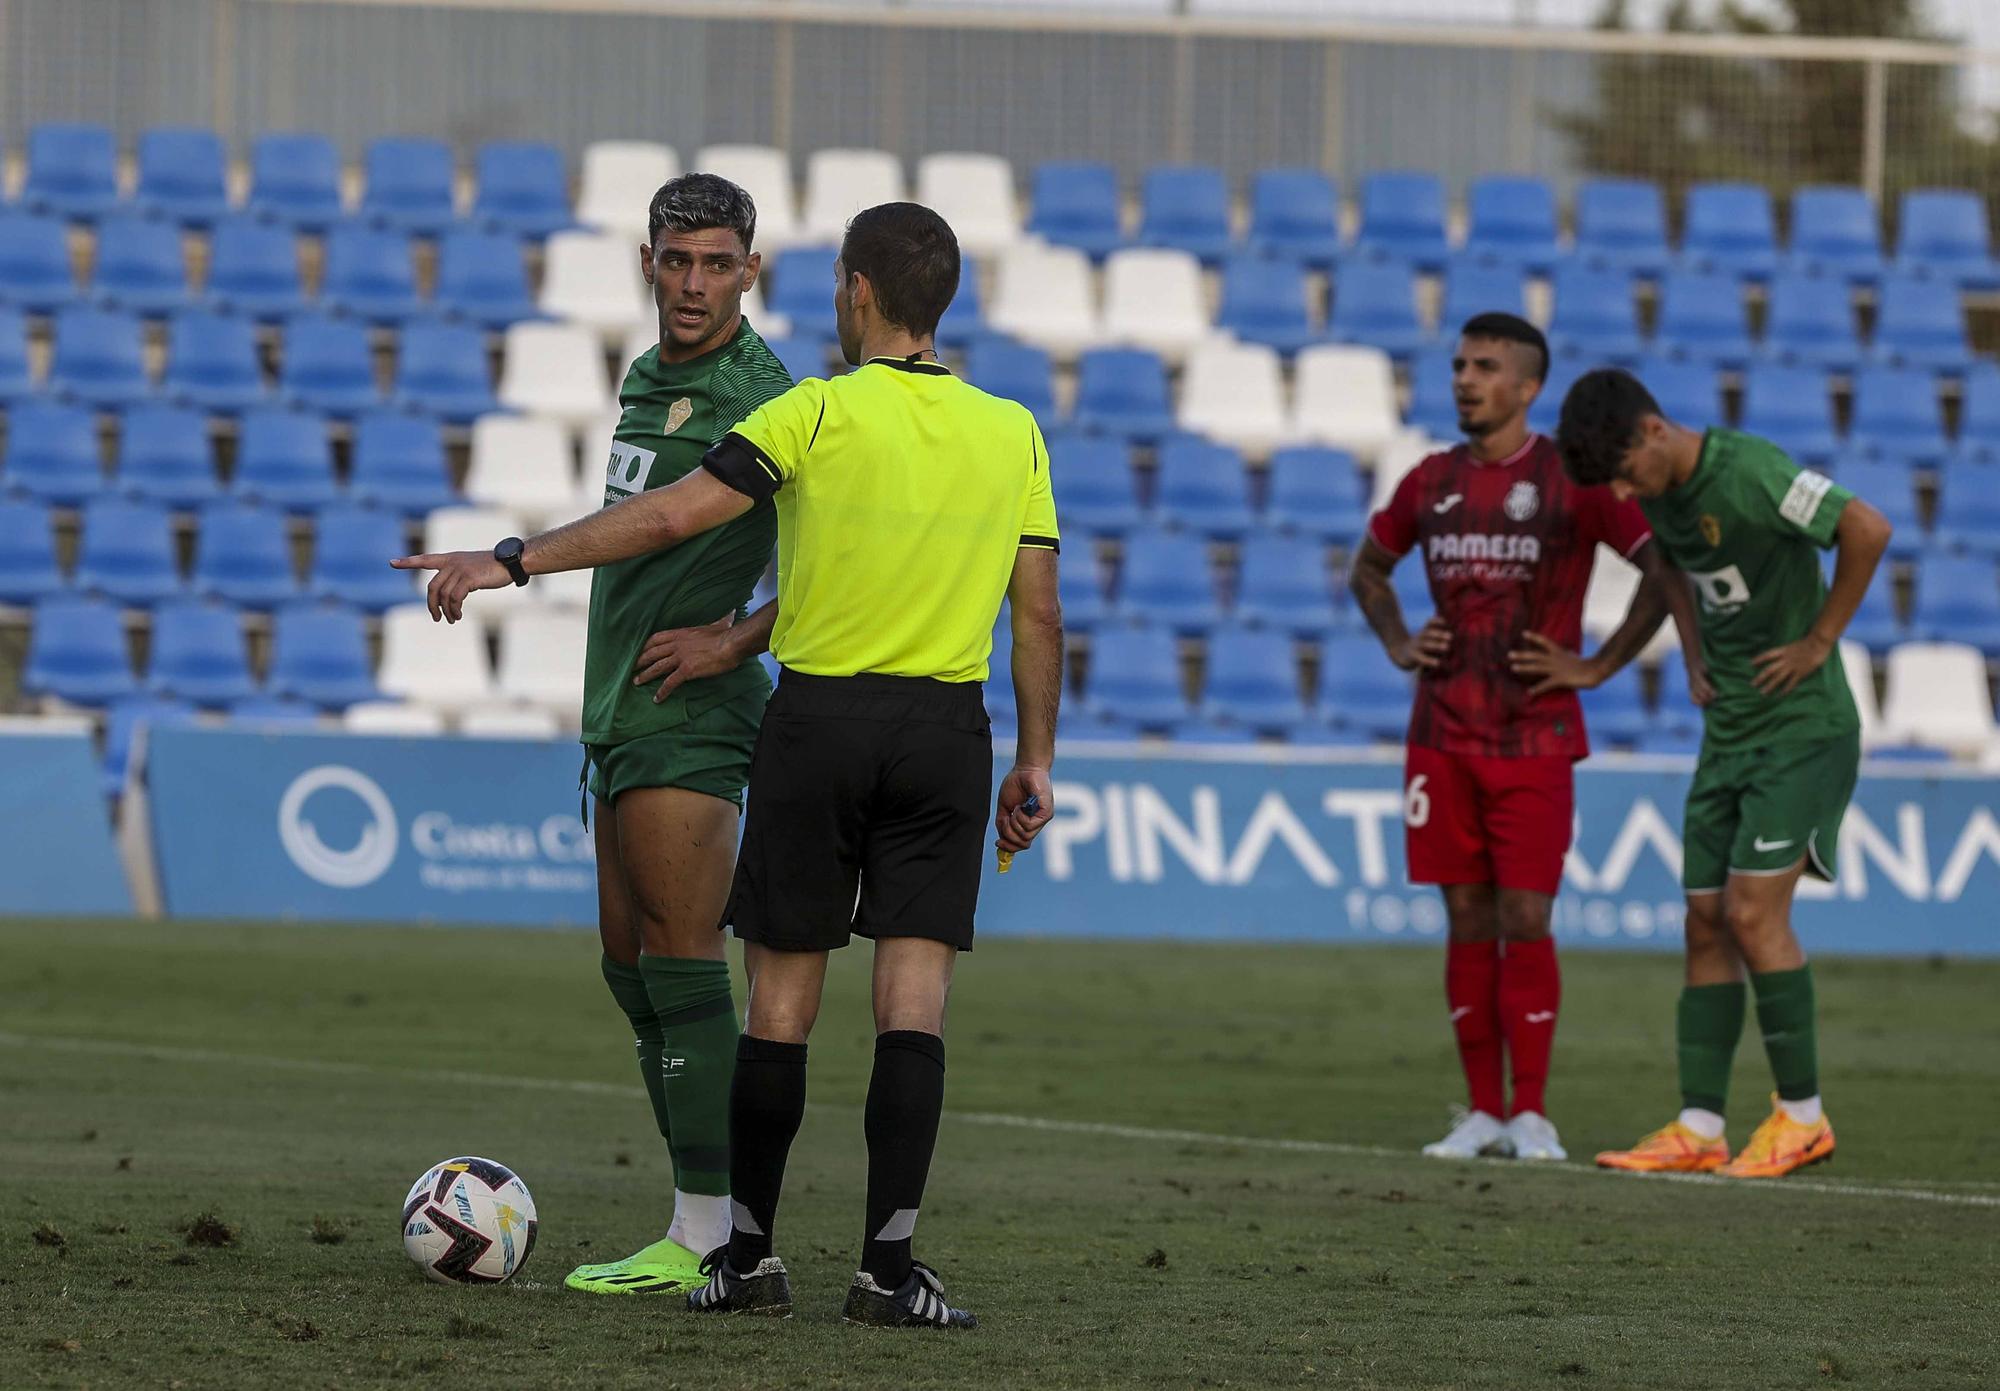 El Elche pierde 1-3 frente al Villarreal B en el segundo partido amistoso en el Pinatar Arena de San Pedro del Pinatar